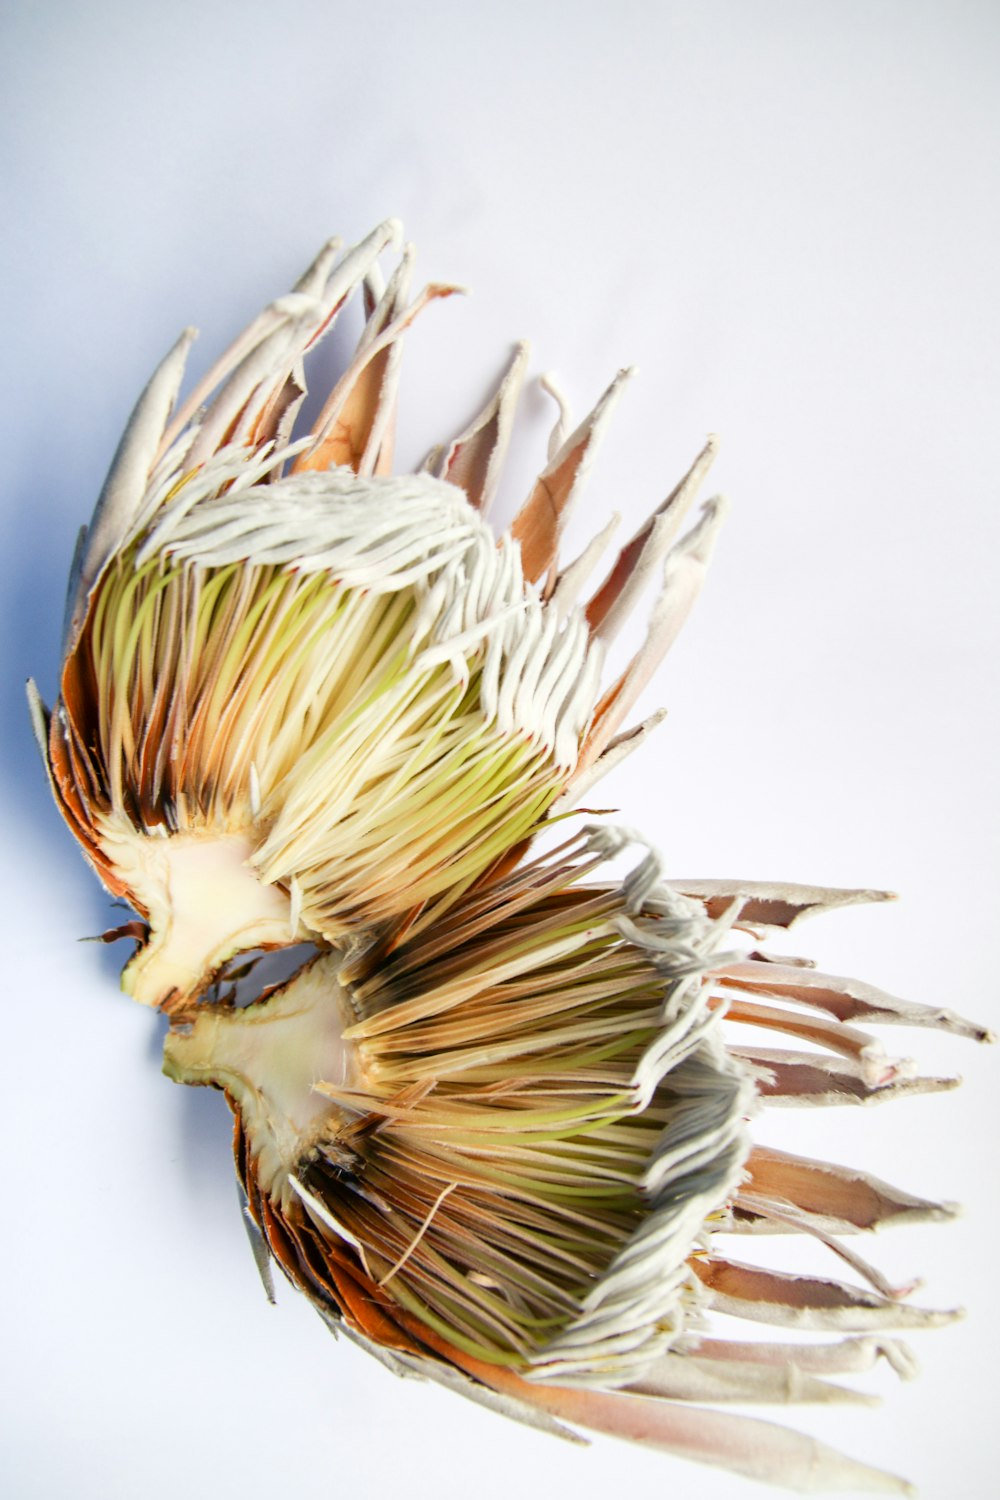 pluma de ave blanca y marrón